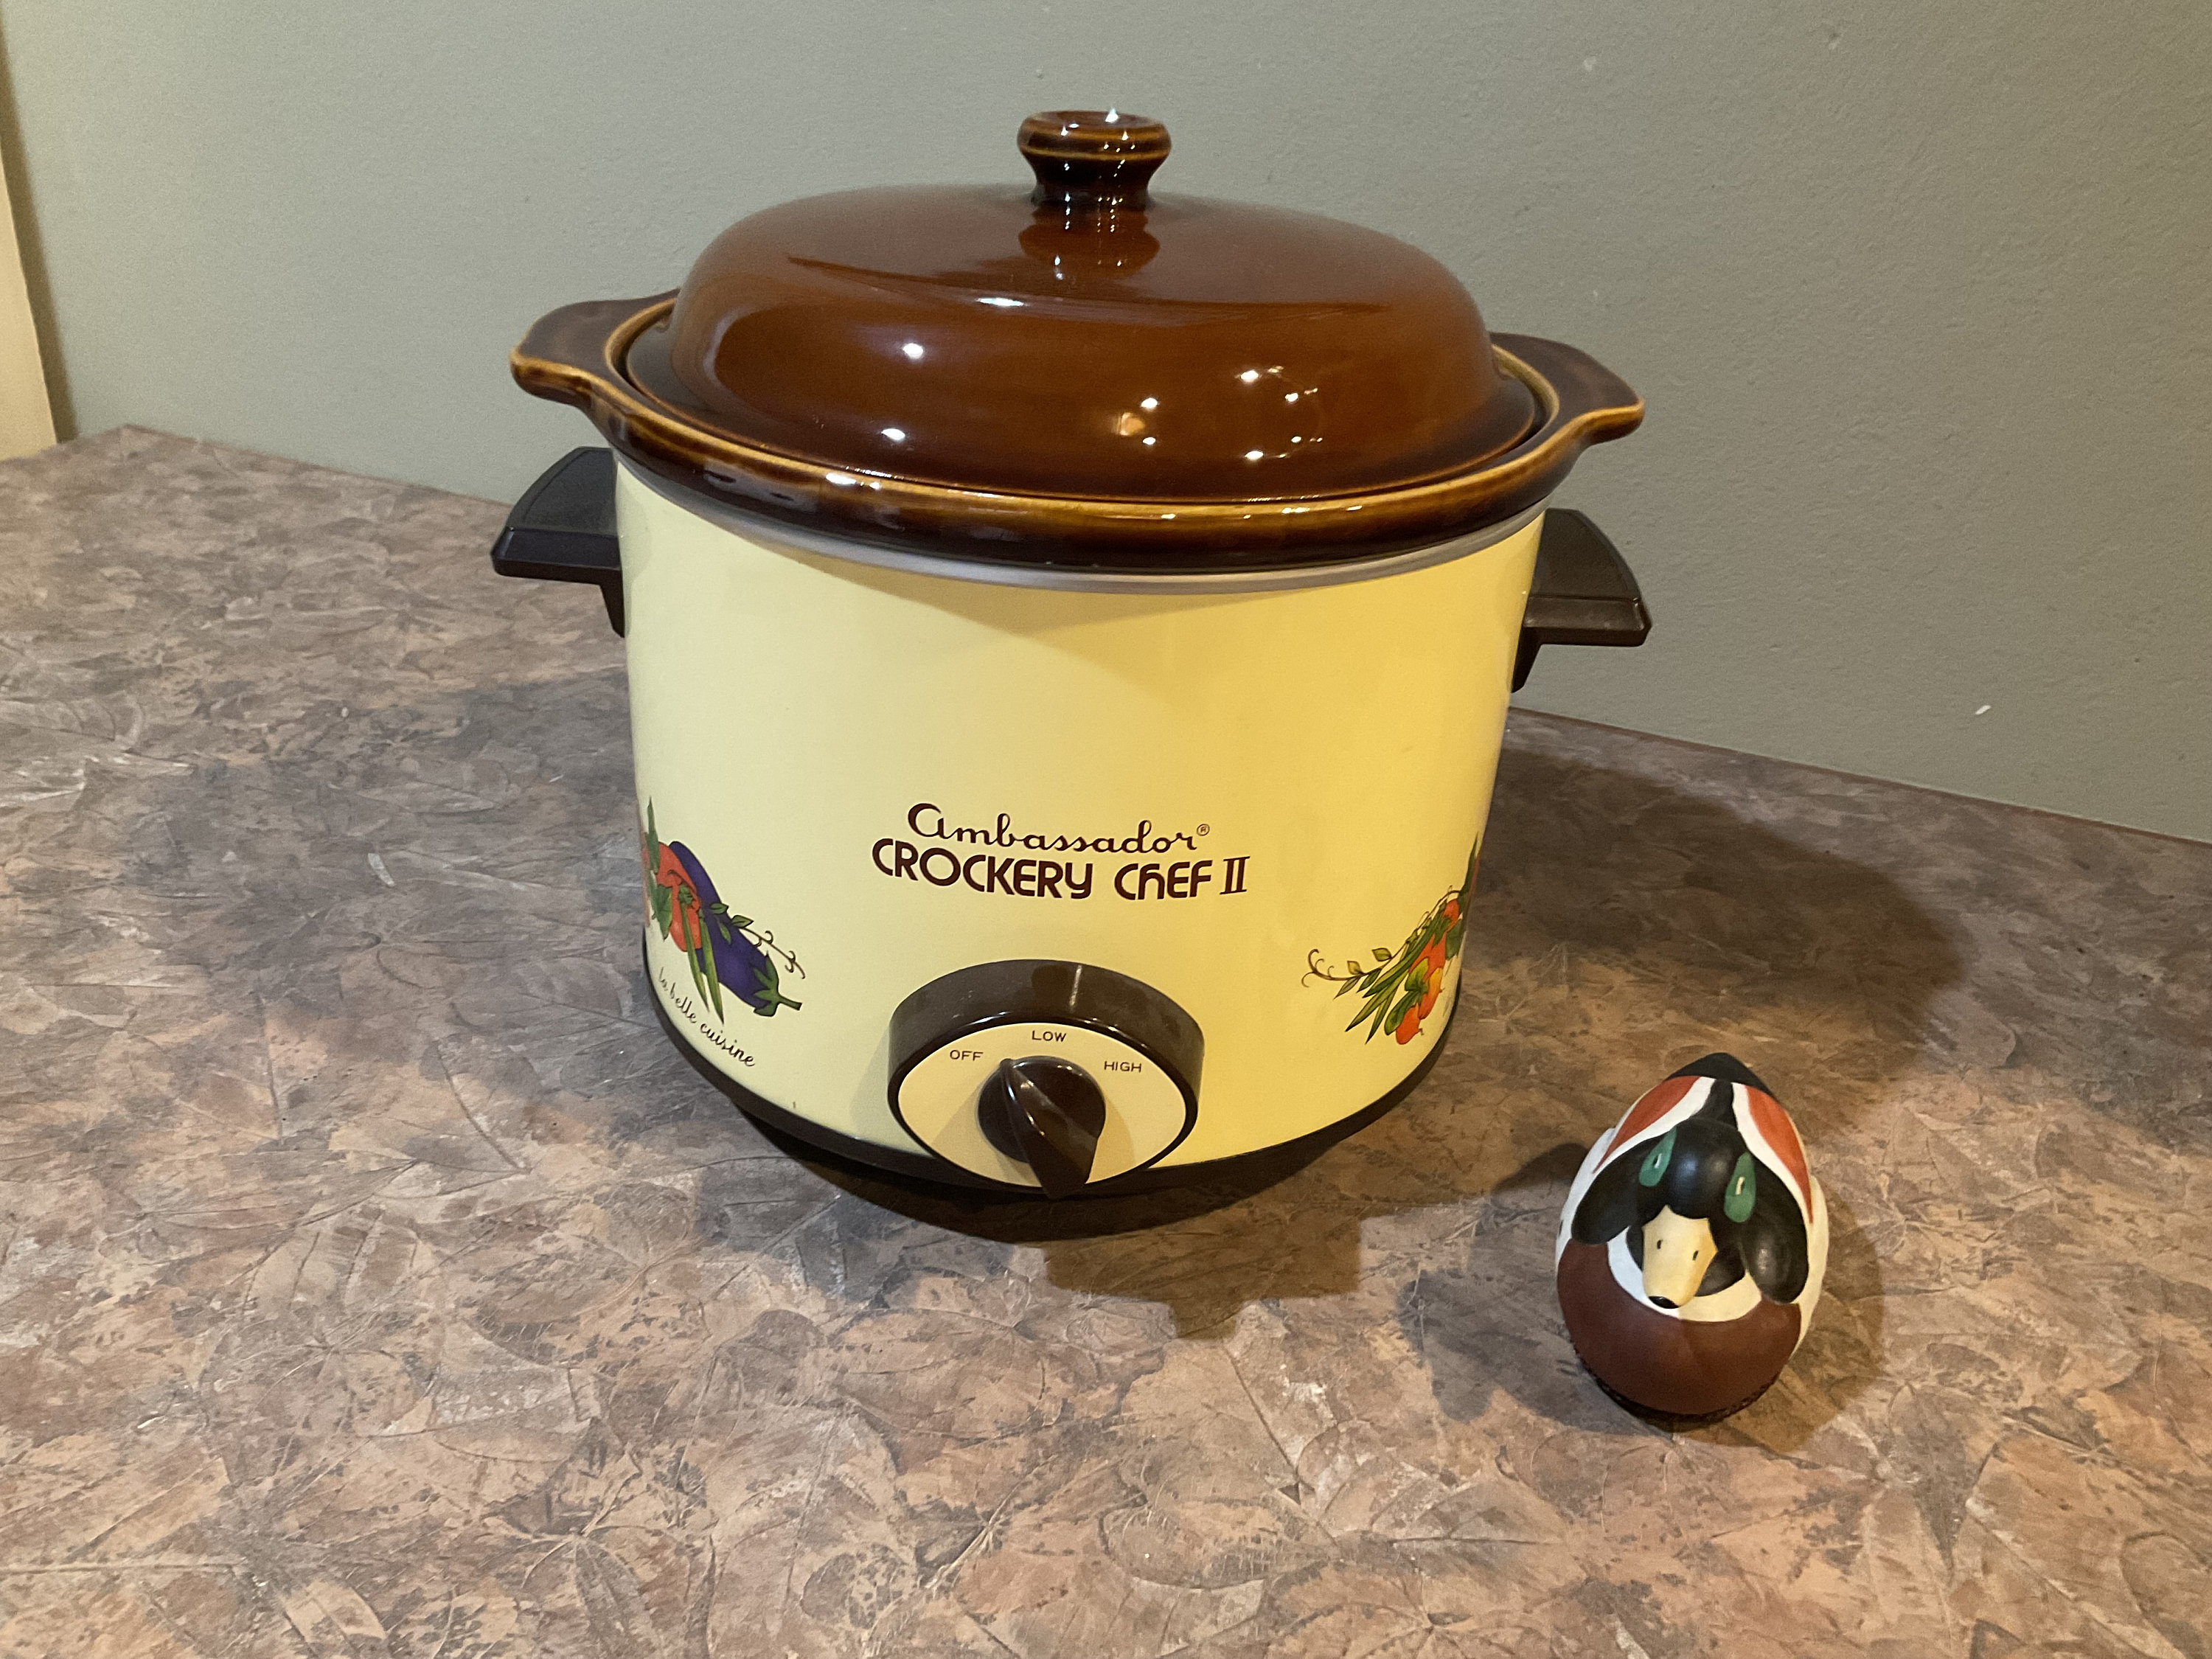 Vintage Crockery Chef Crock Pot Electric Slow Cooker Model #1015